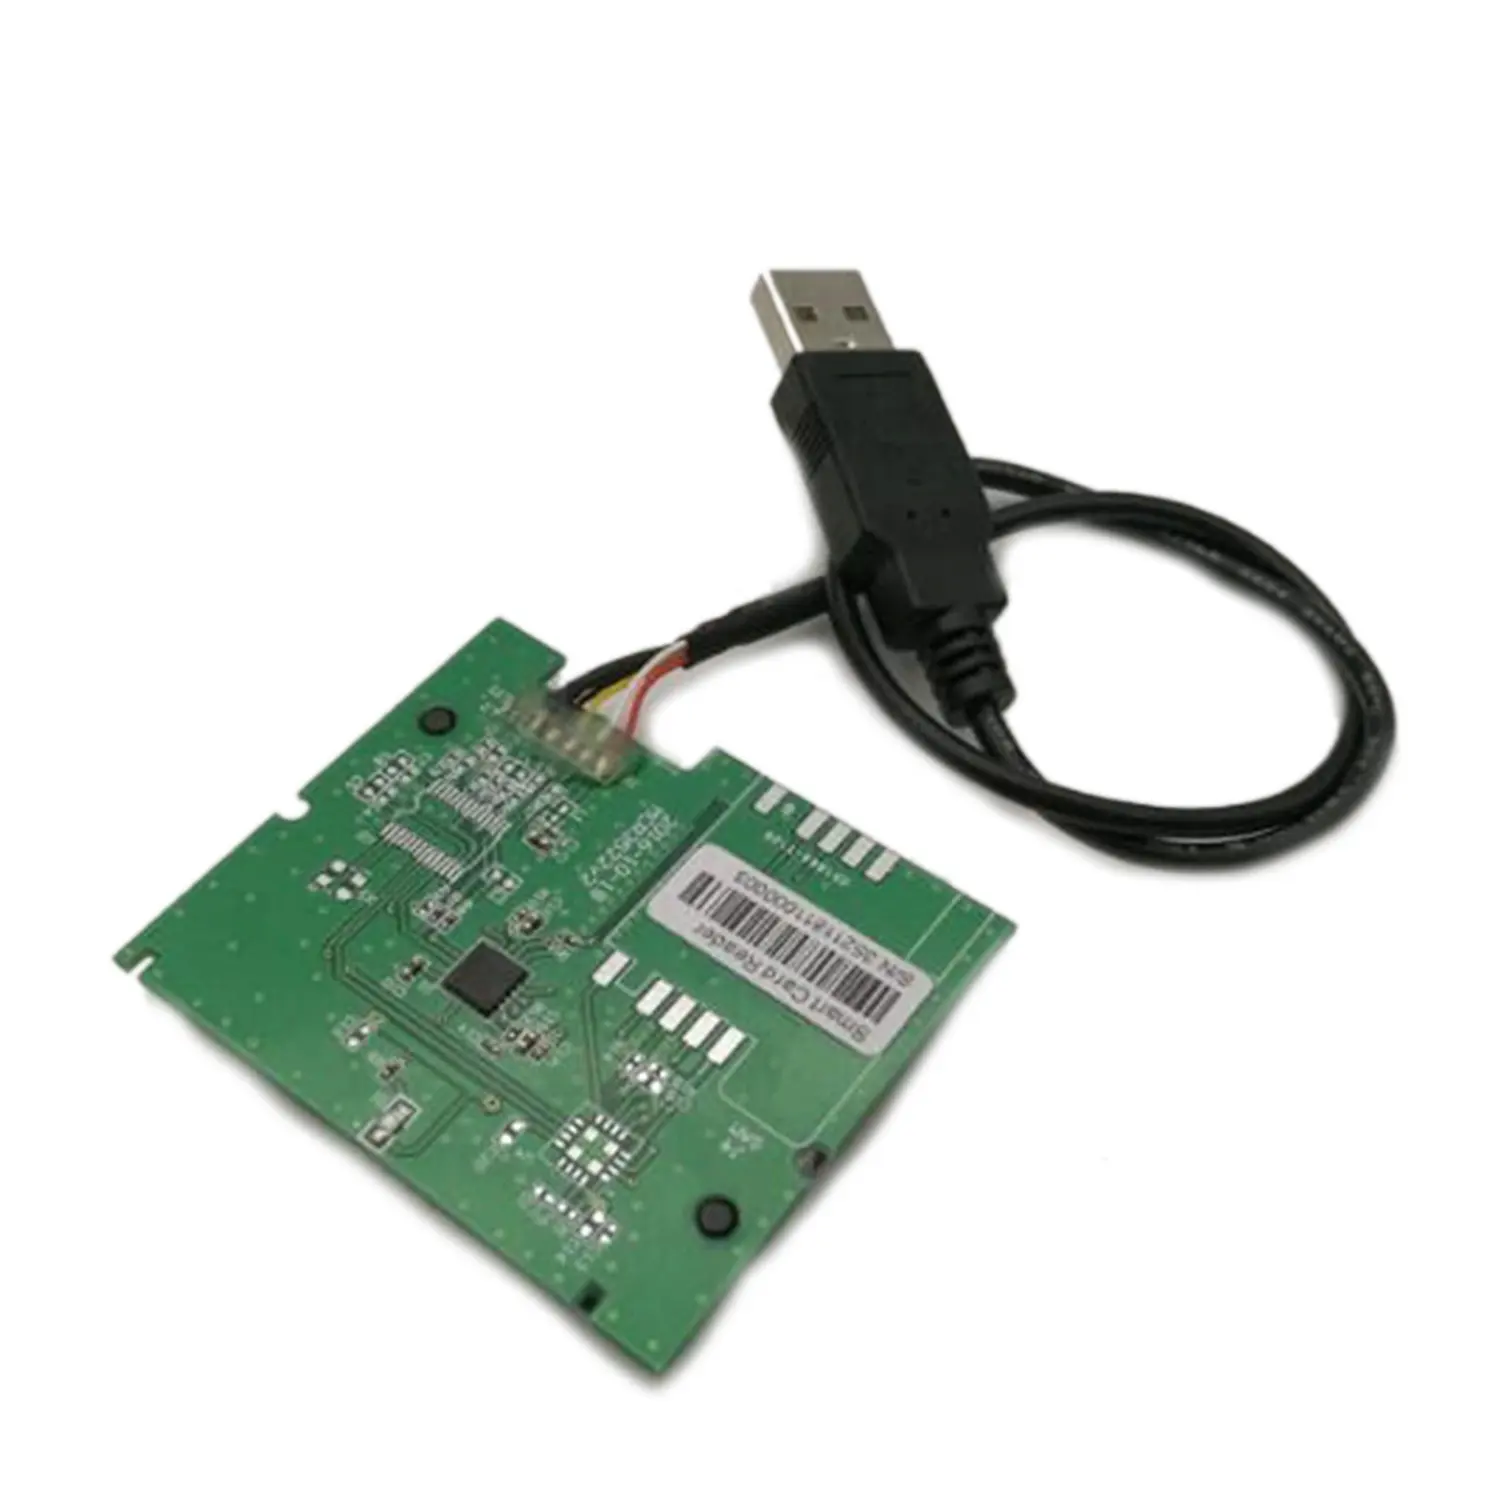 ISO-7816 RoHS USB Smargo Floppy สมาร์ทชิปการ์ด SDK ฟรี MCR3521-M